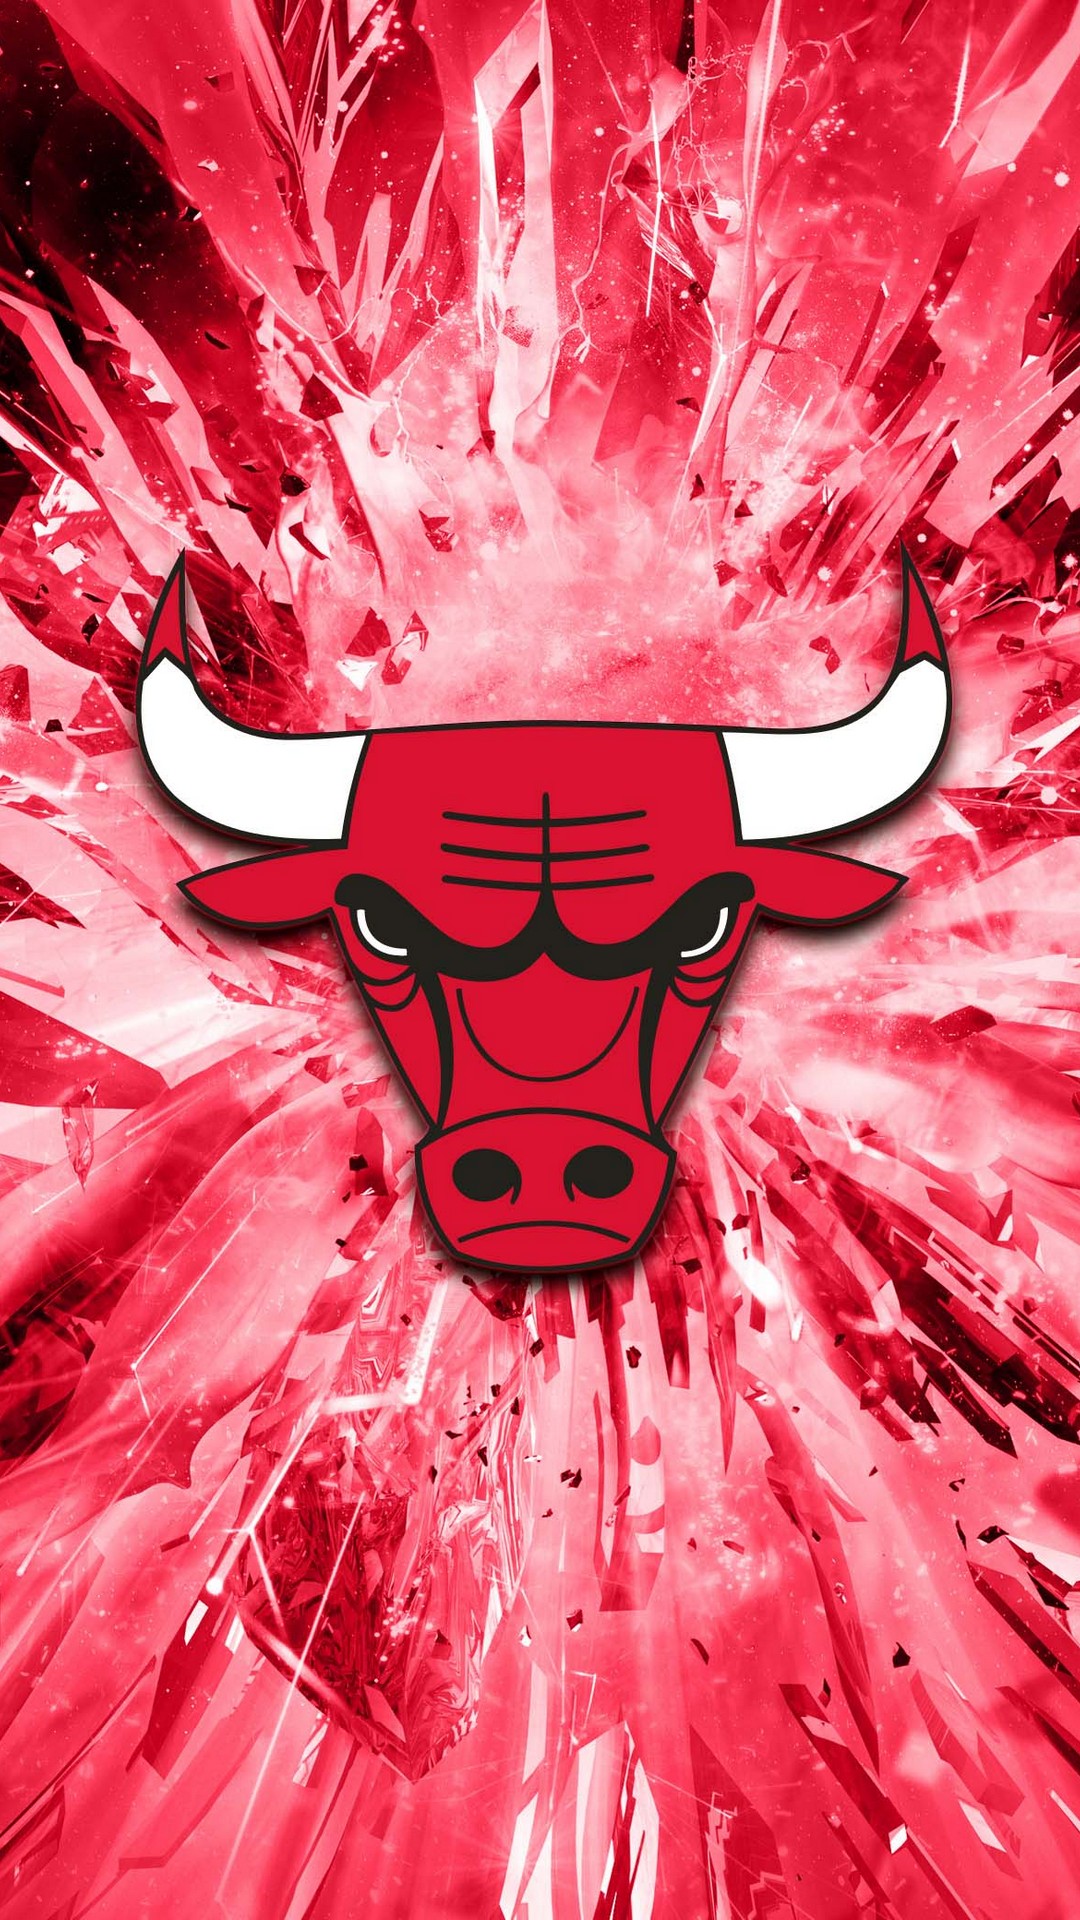 Iphone Wallpaper Hd Chicago Bulls 2021 Basketball Wallpaper